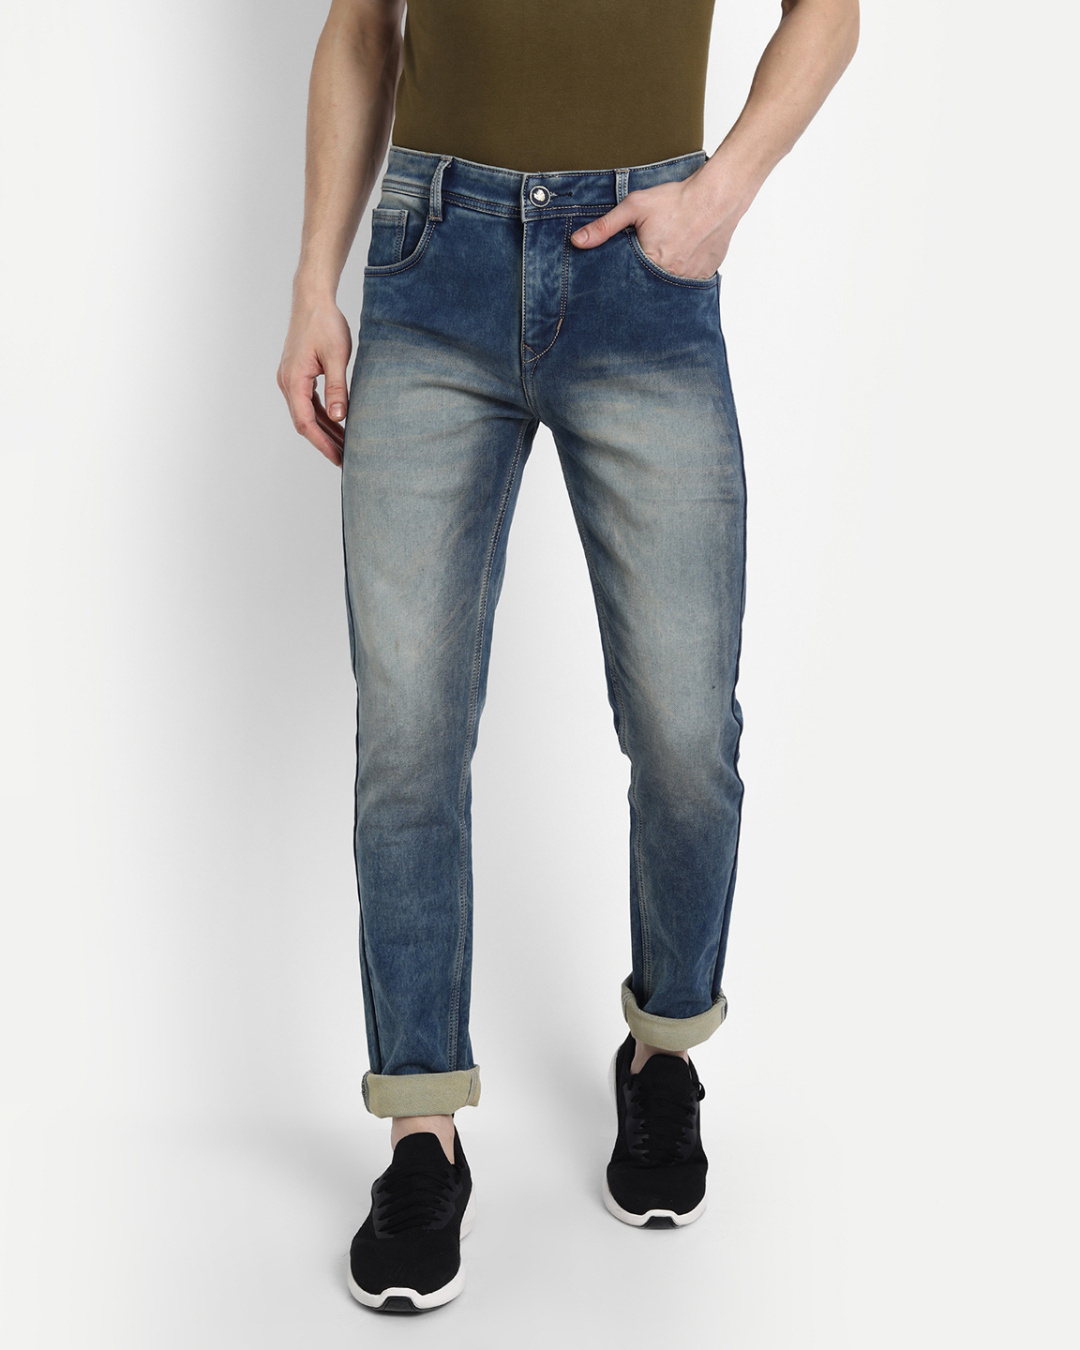 Buy Men's Blue Solid Slim Fit Denim Jeans for Men Blue Online at Bewakoof